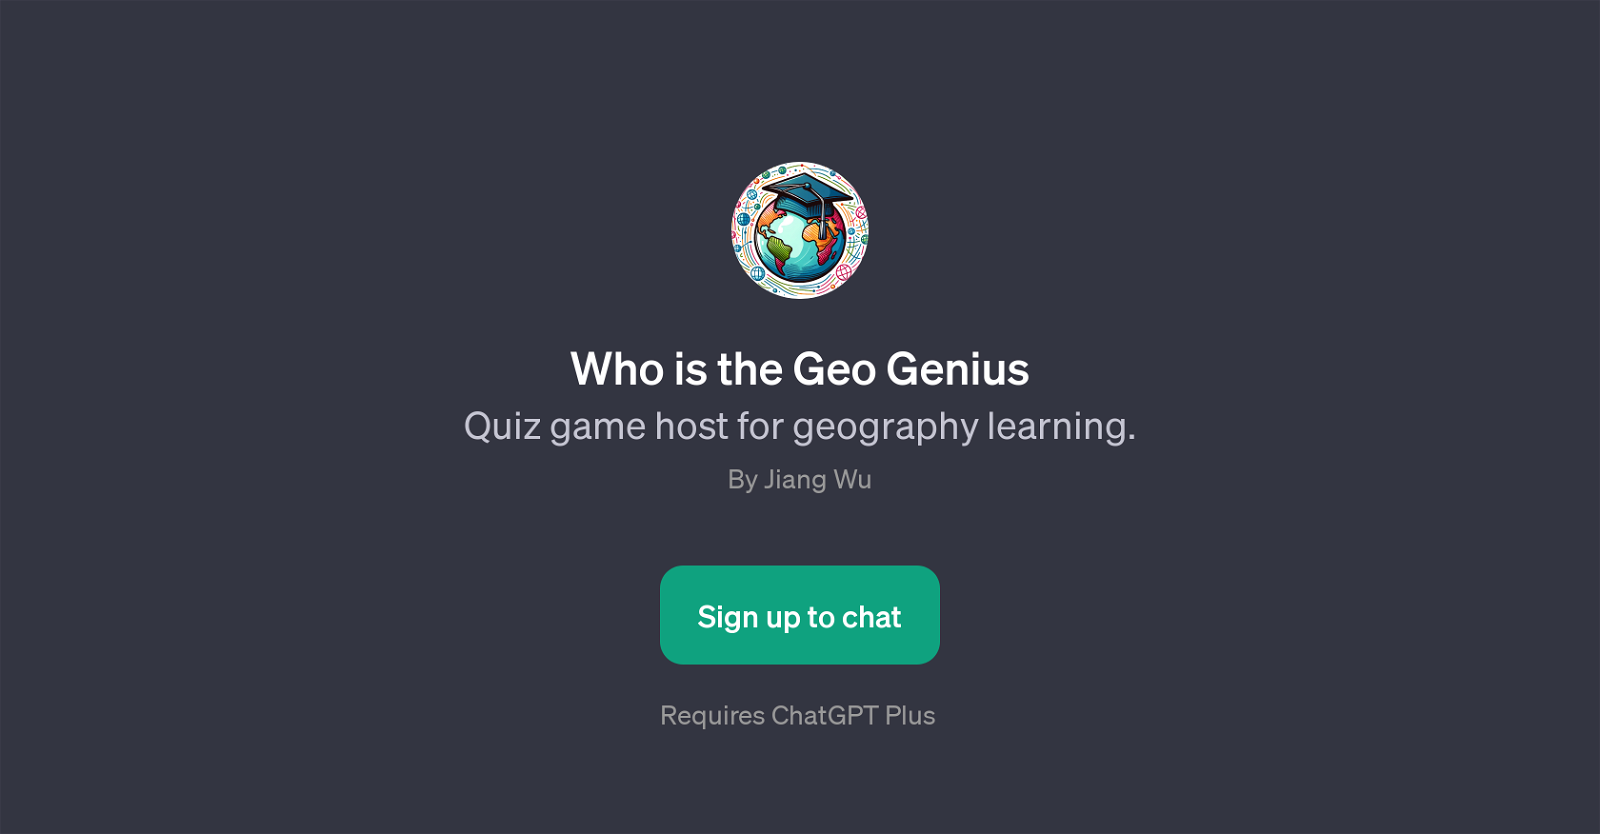 Who is the Geo Genius website